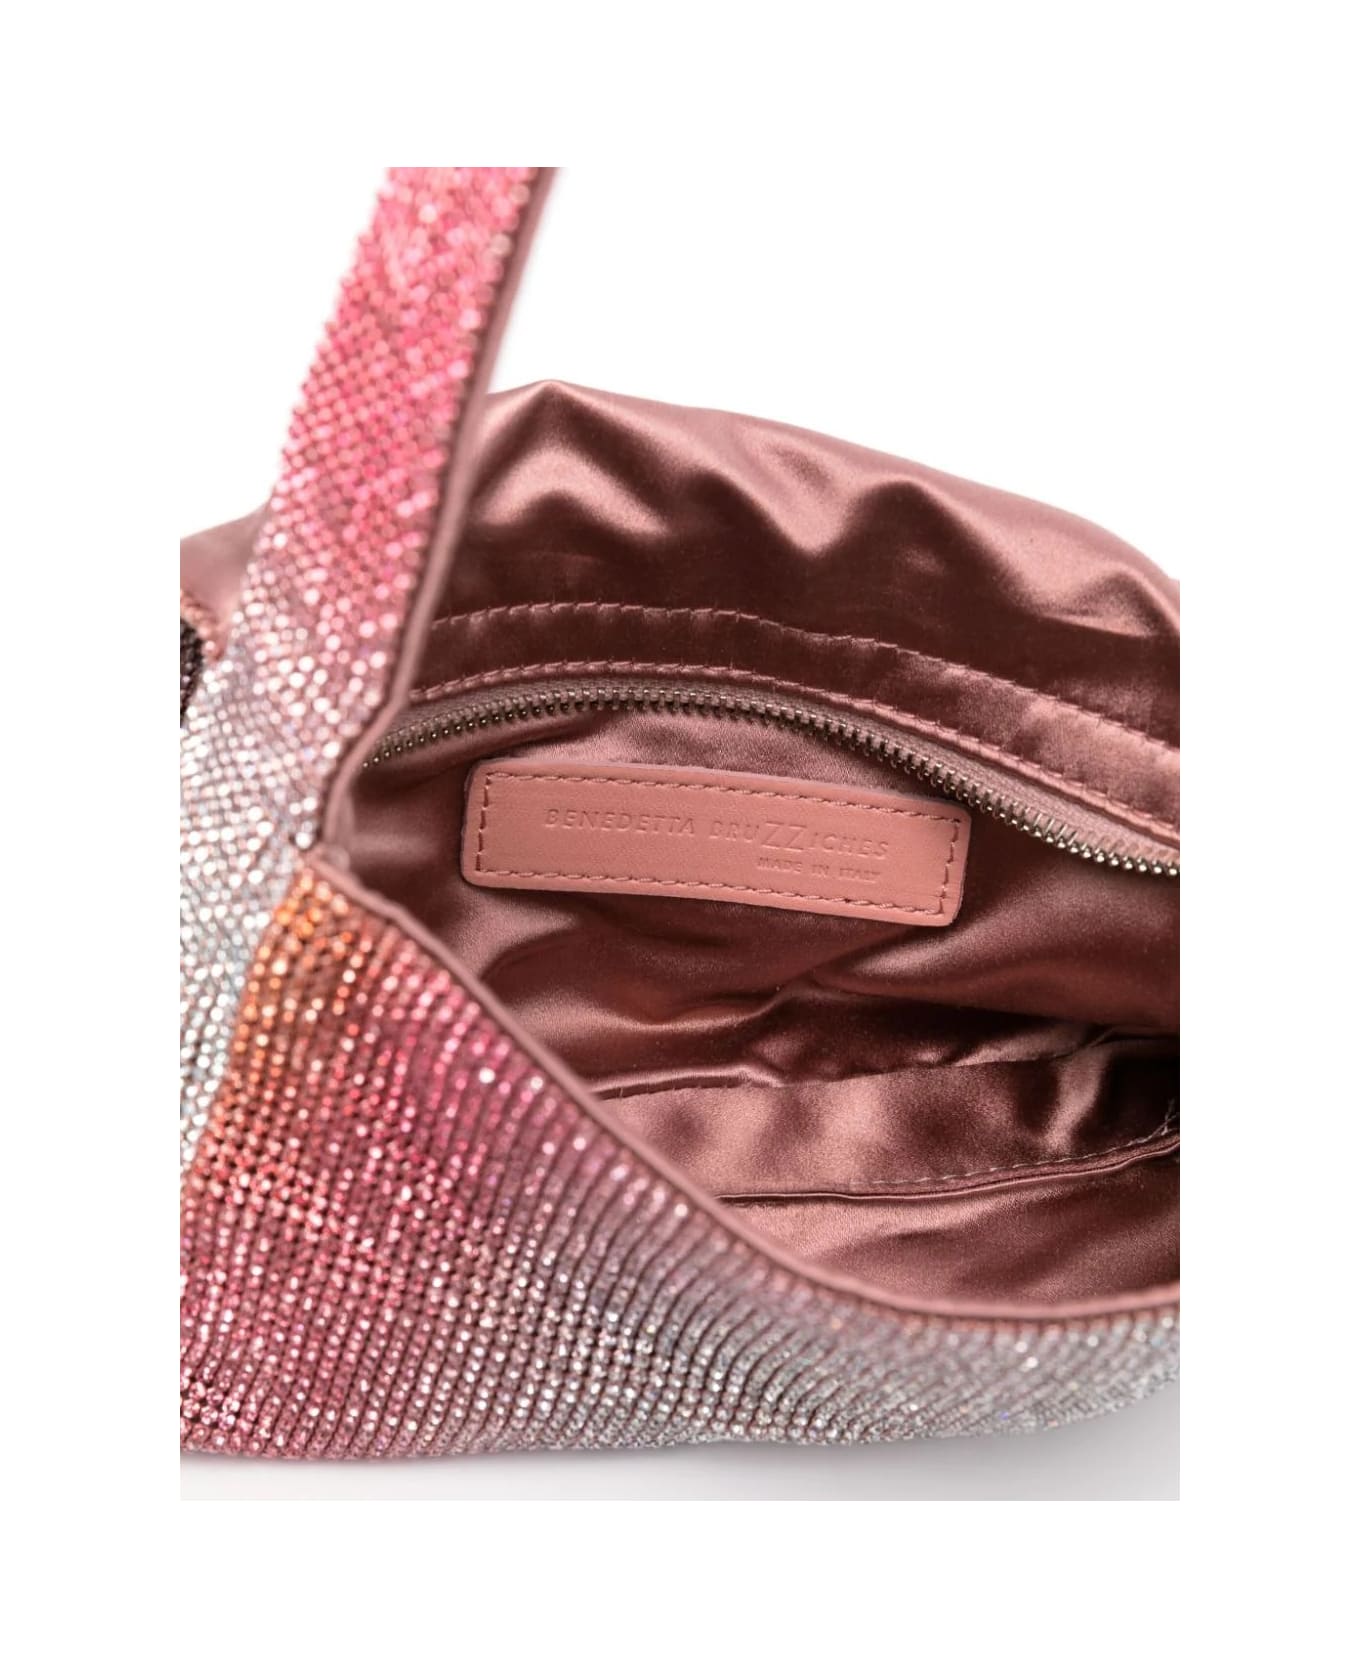 Benedetta Bruzziches Pink Crystal - Vitty La Mignon Bag - Pink